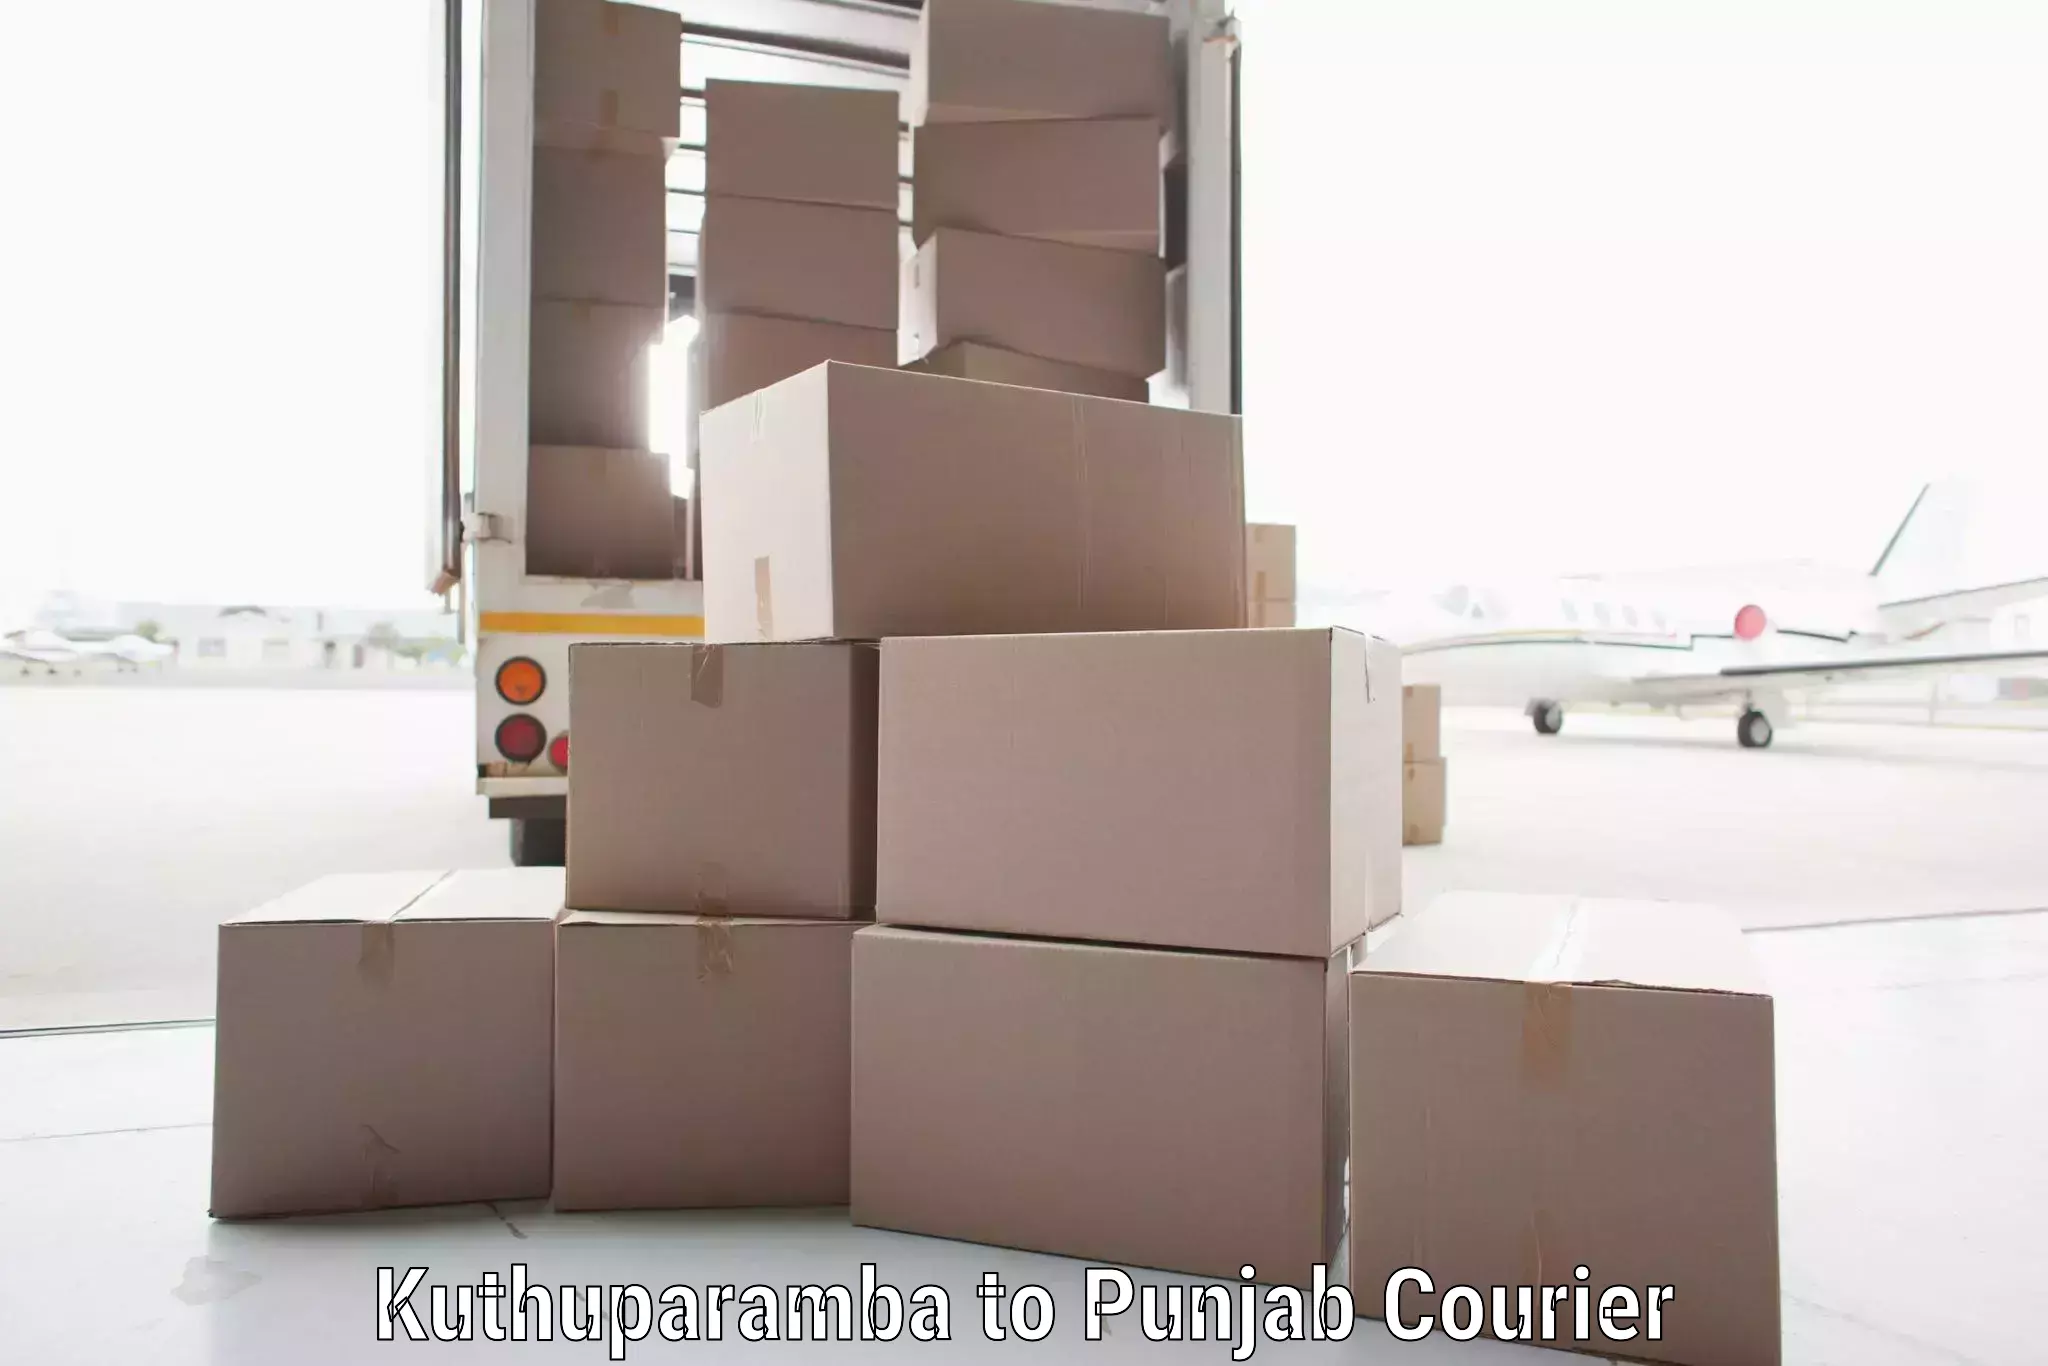 Comprehensive logistics solutions Kuthuparamba to Anandpur Sahib